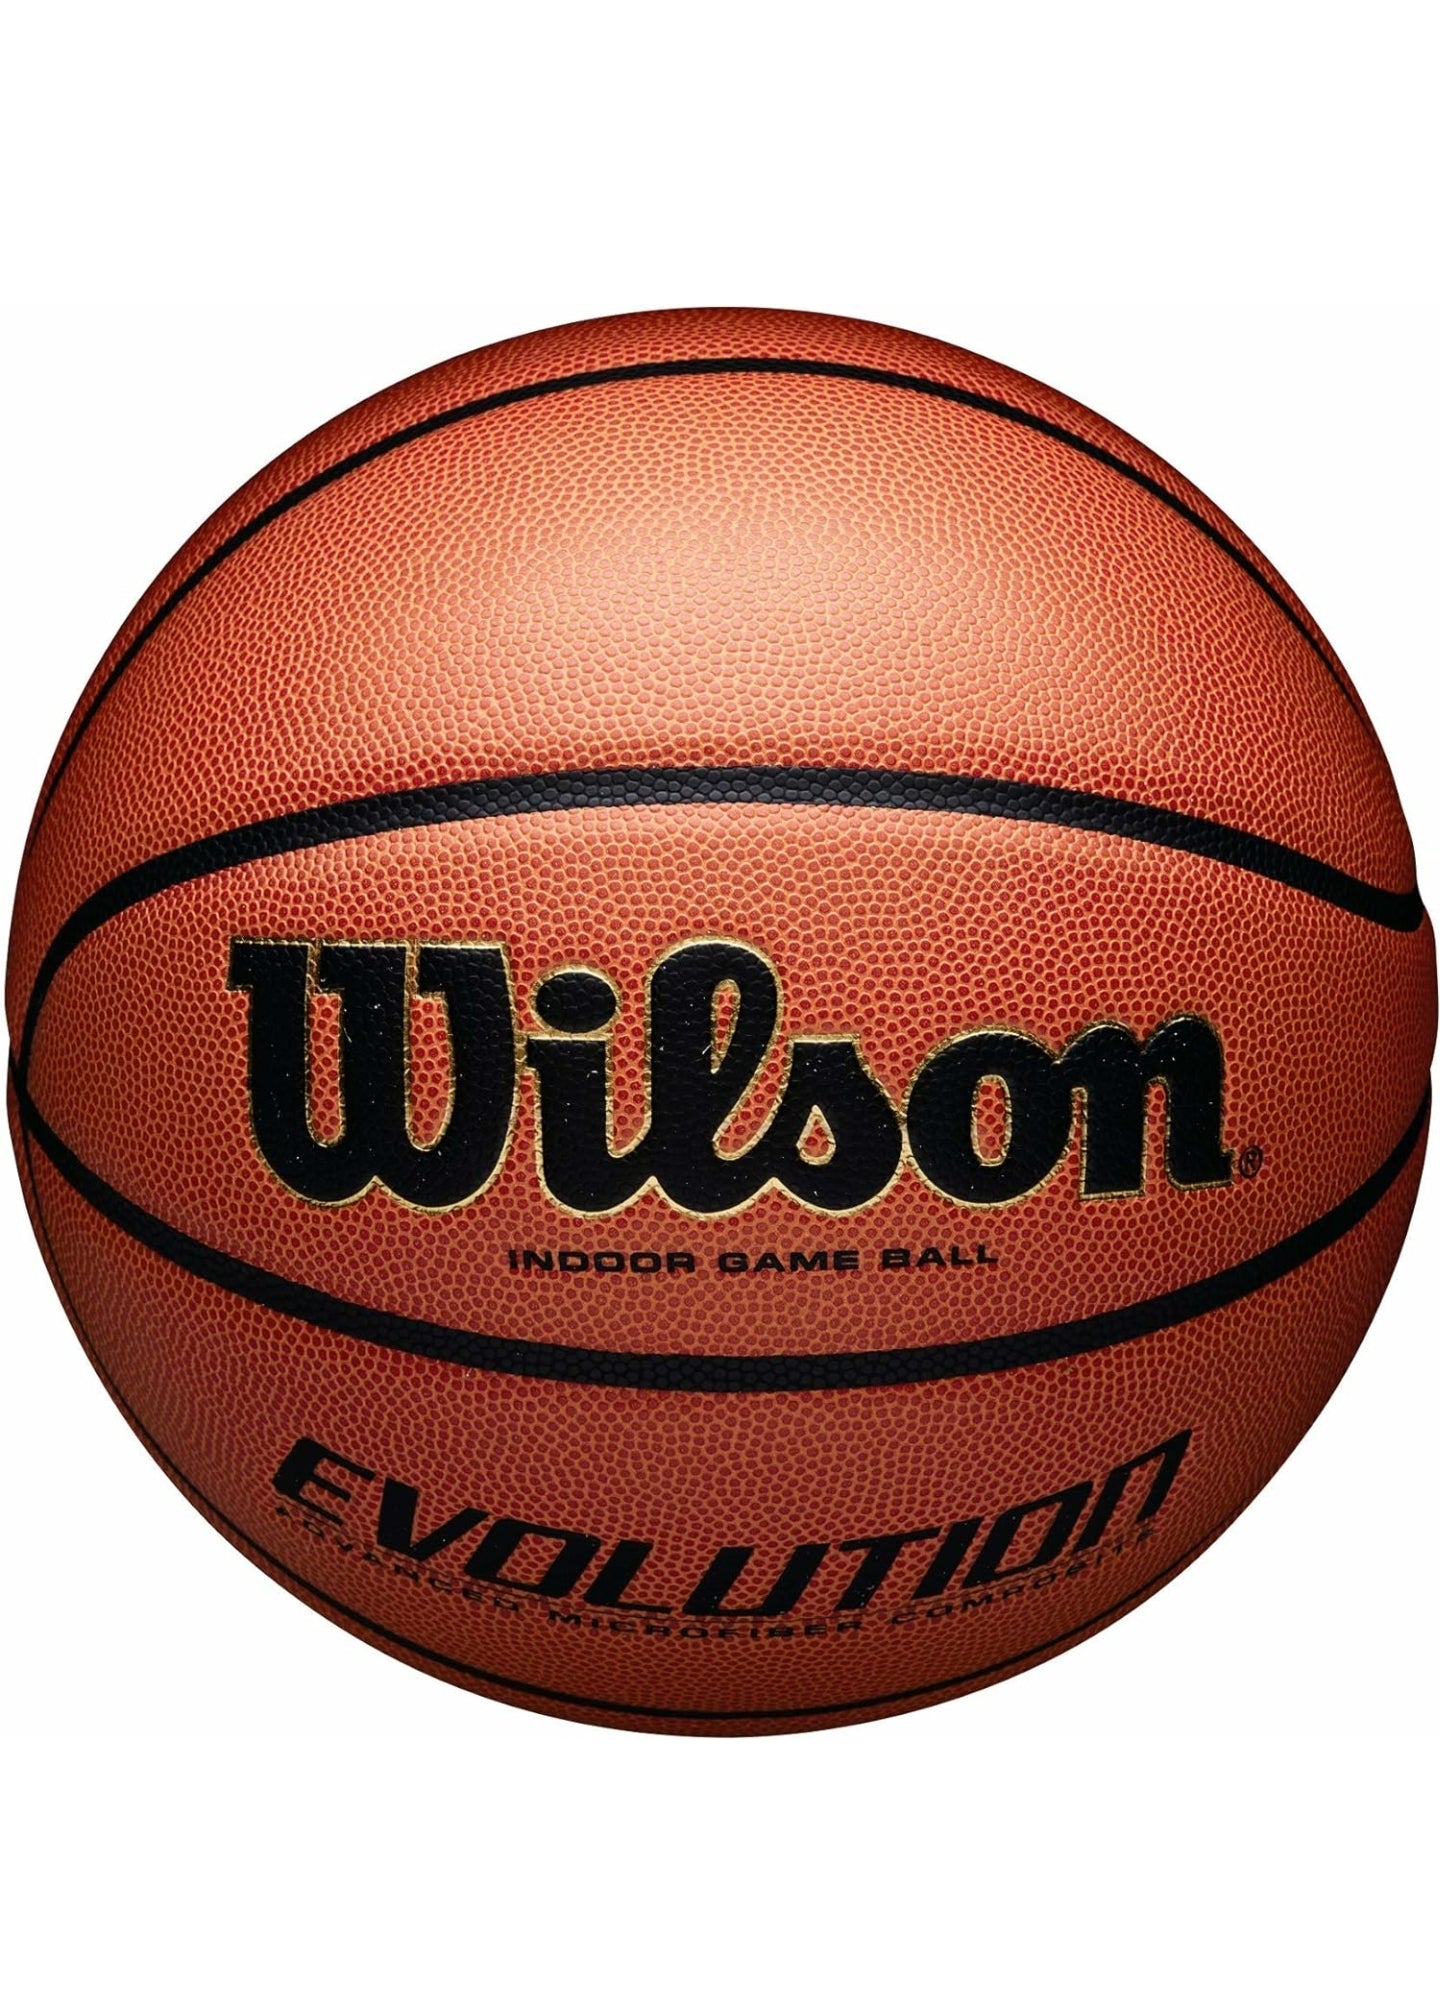 WILSON Evolution Game Basketball Royal Size 7 - 29.5"